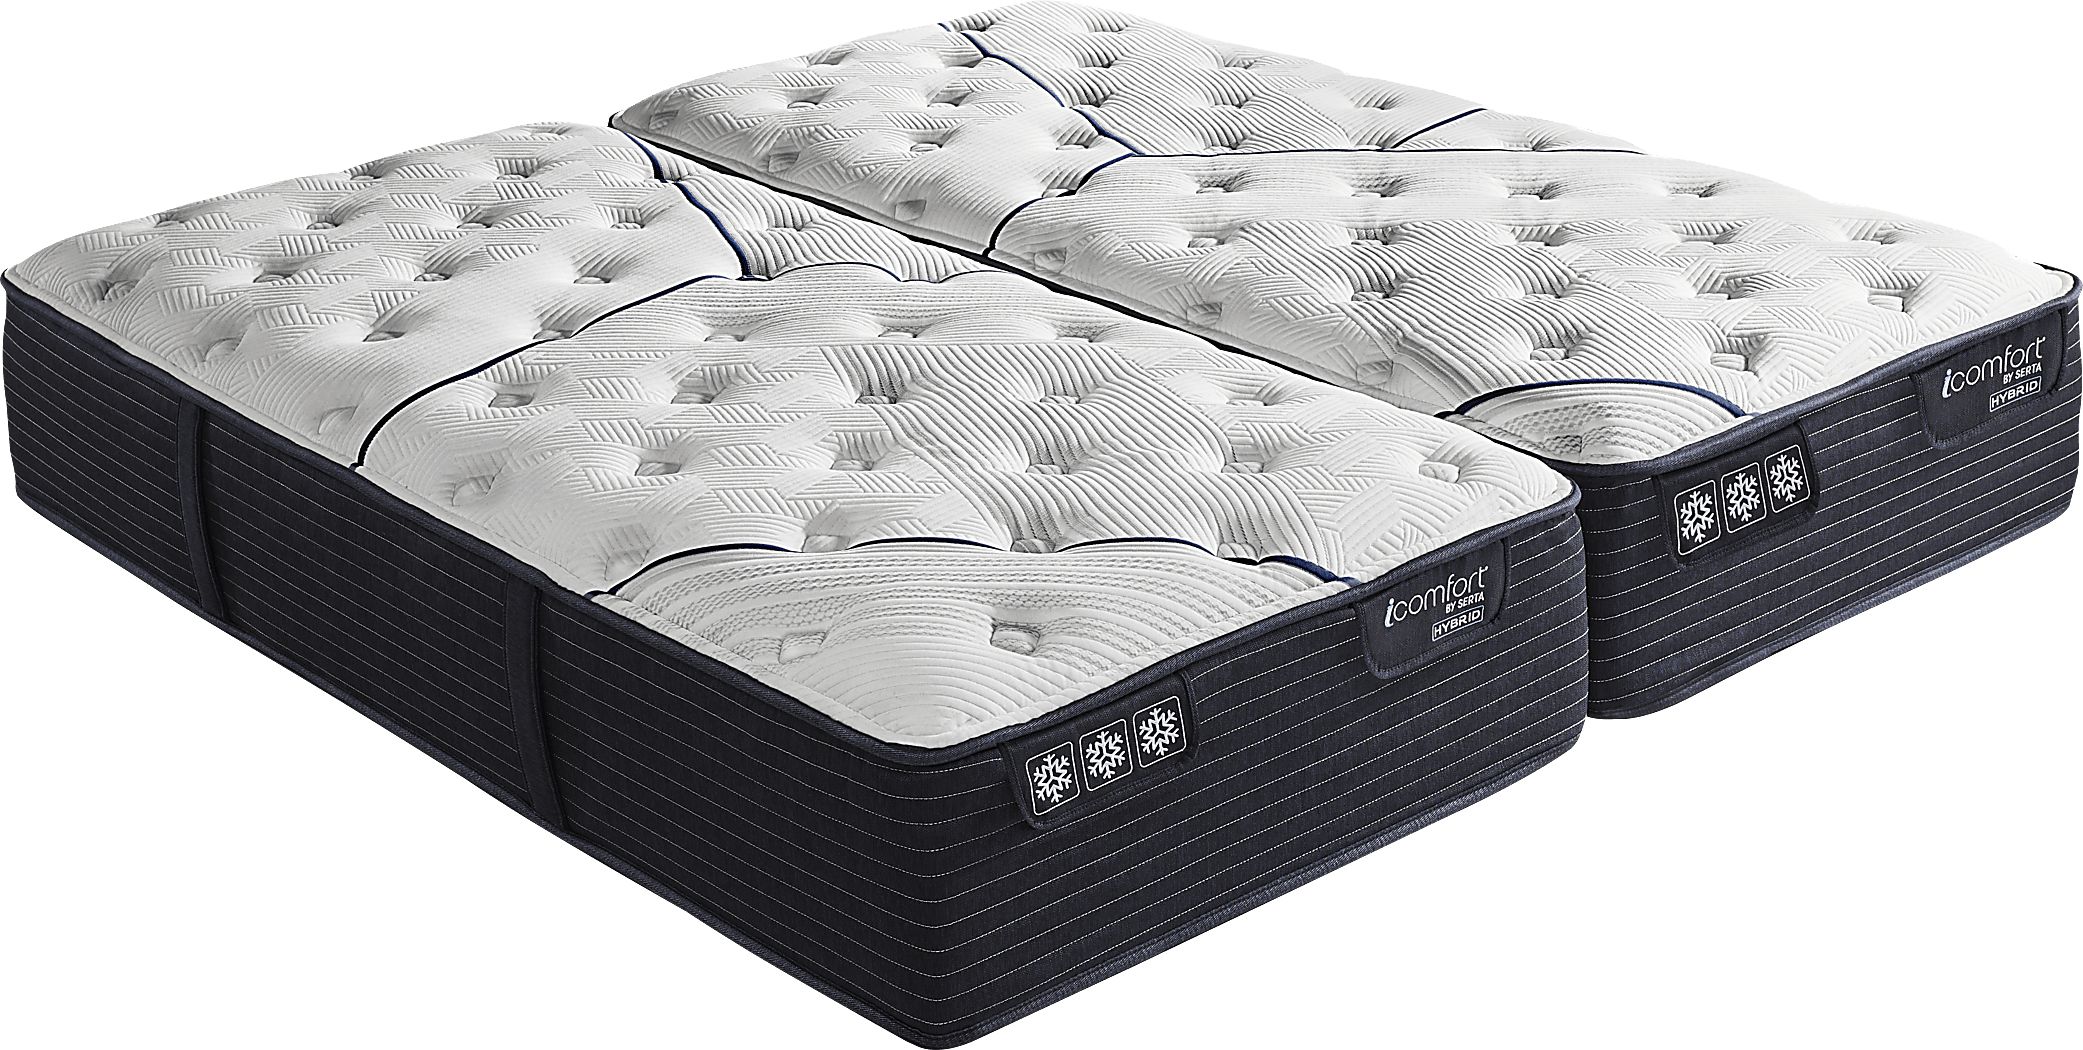 serta icomfort king mattress dimensions